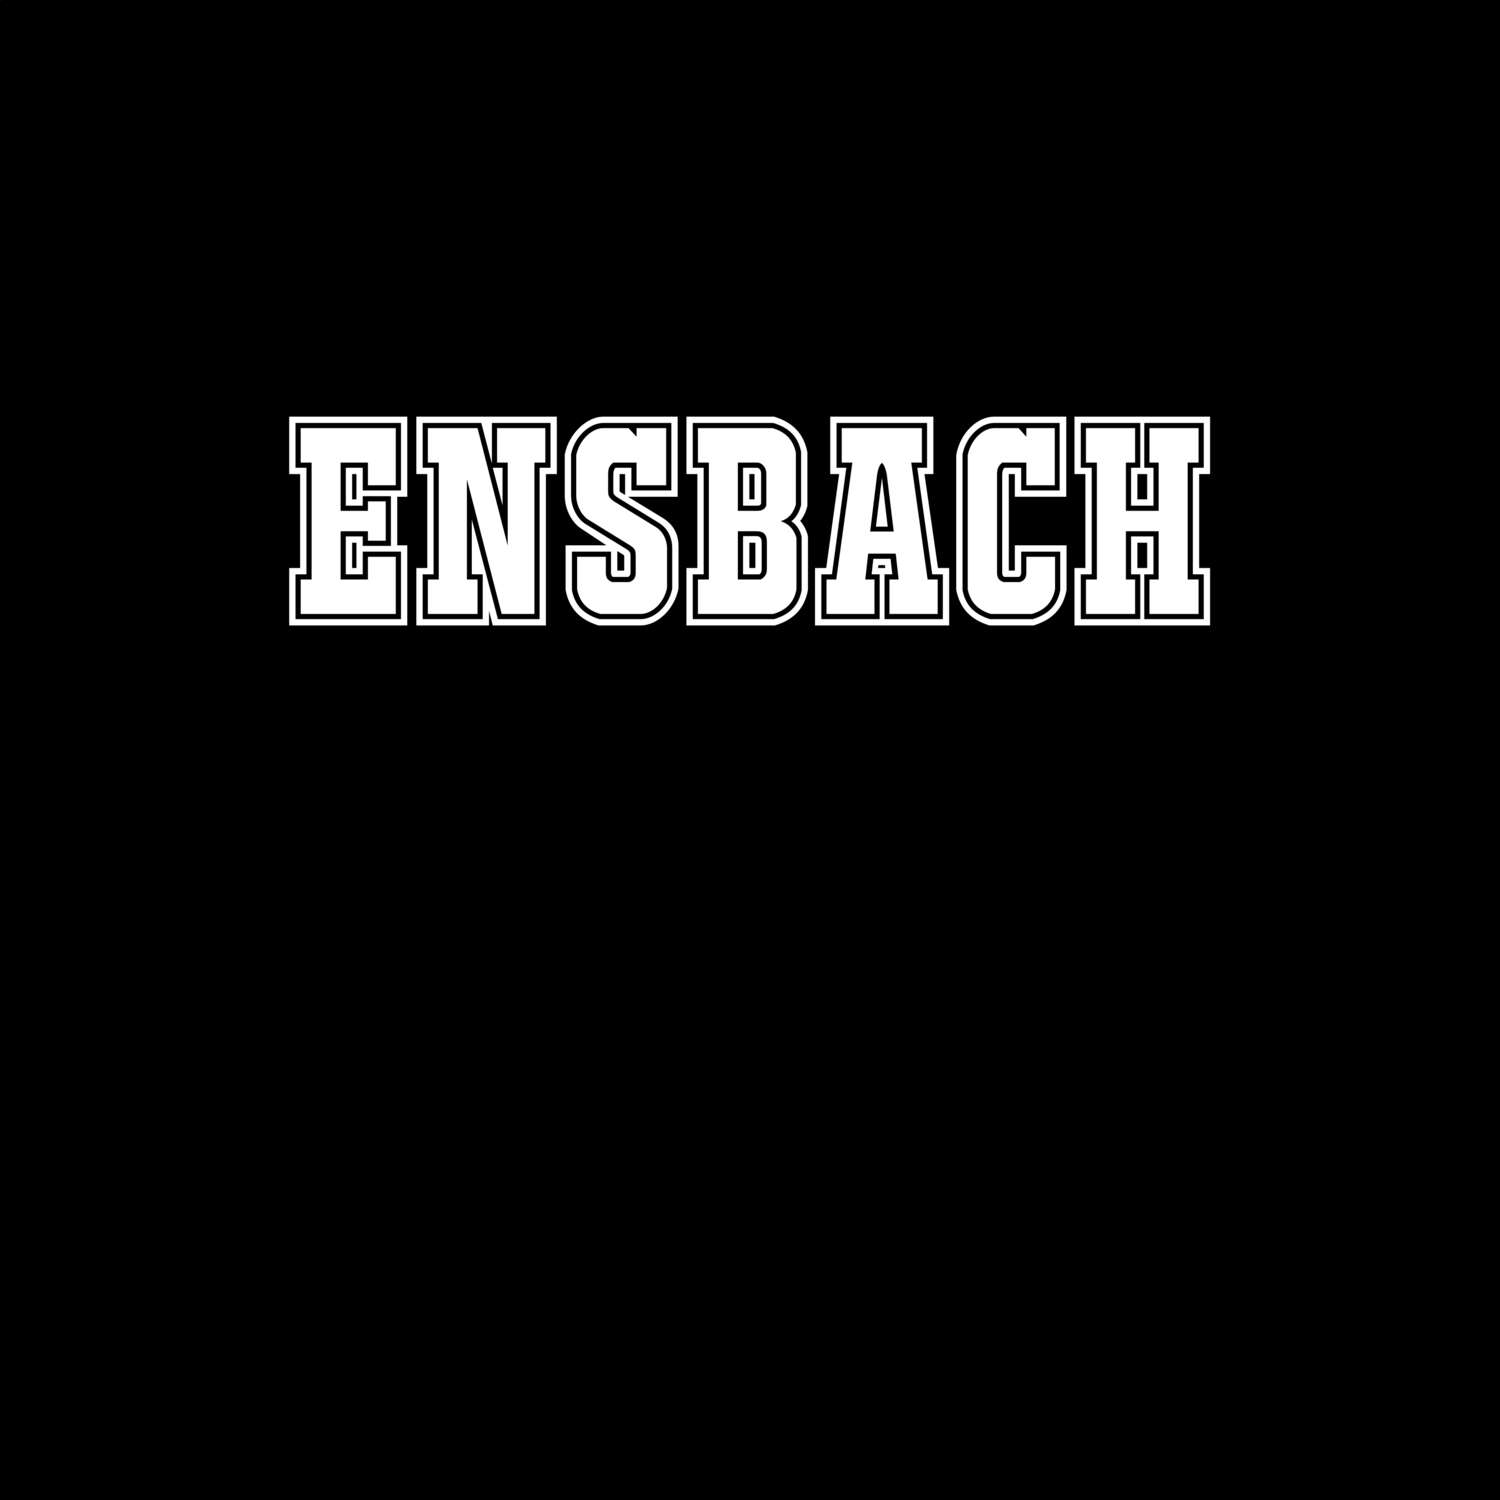 Ensbach T-Shirt »Classic«